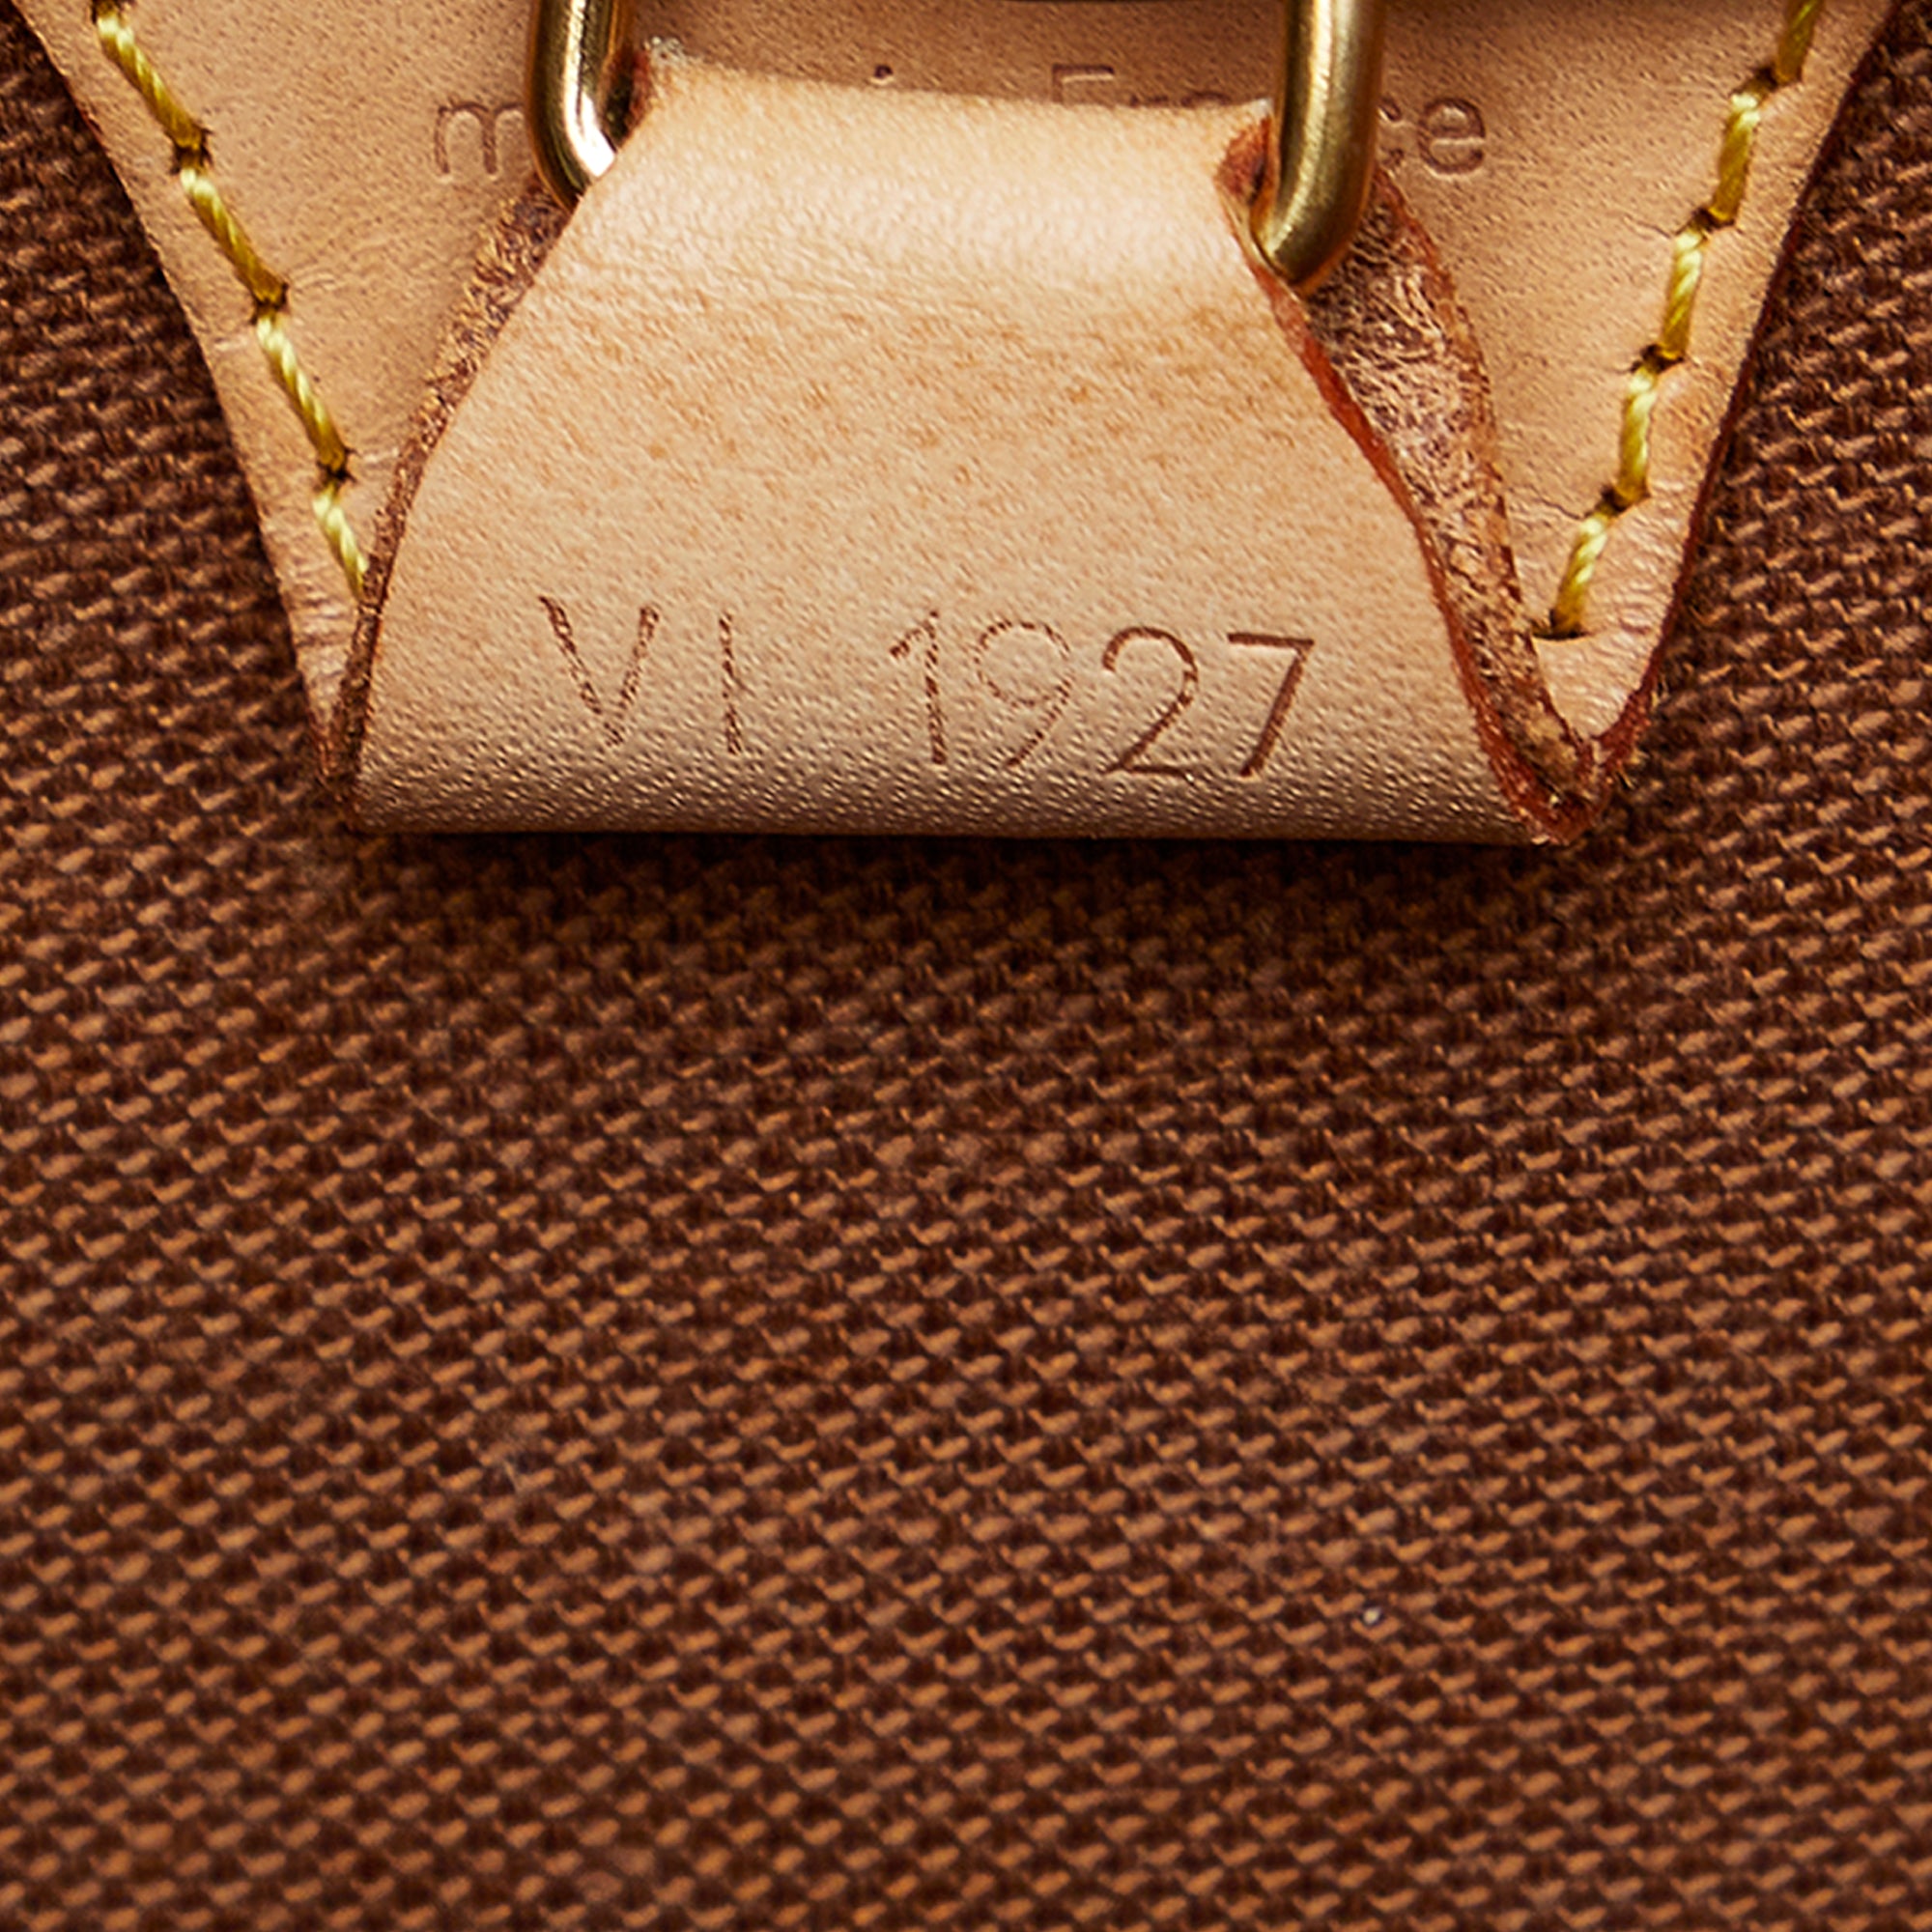 127-0Shops Revival, Brown Louis Vuitton Monogram Ellipse MM Handbag